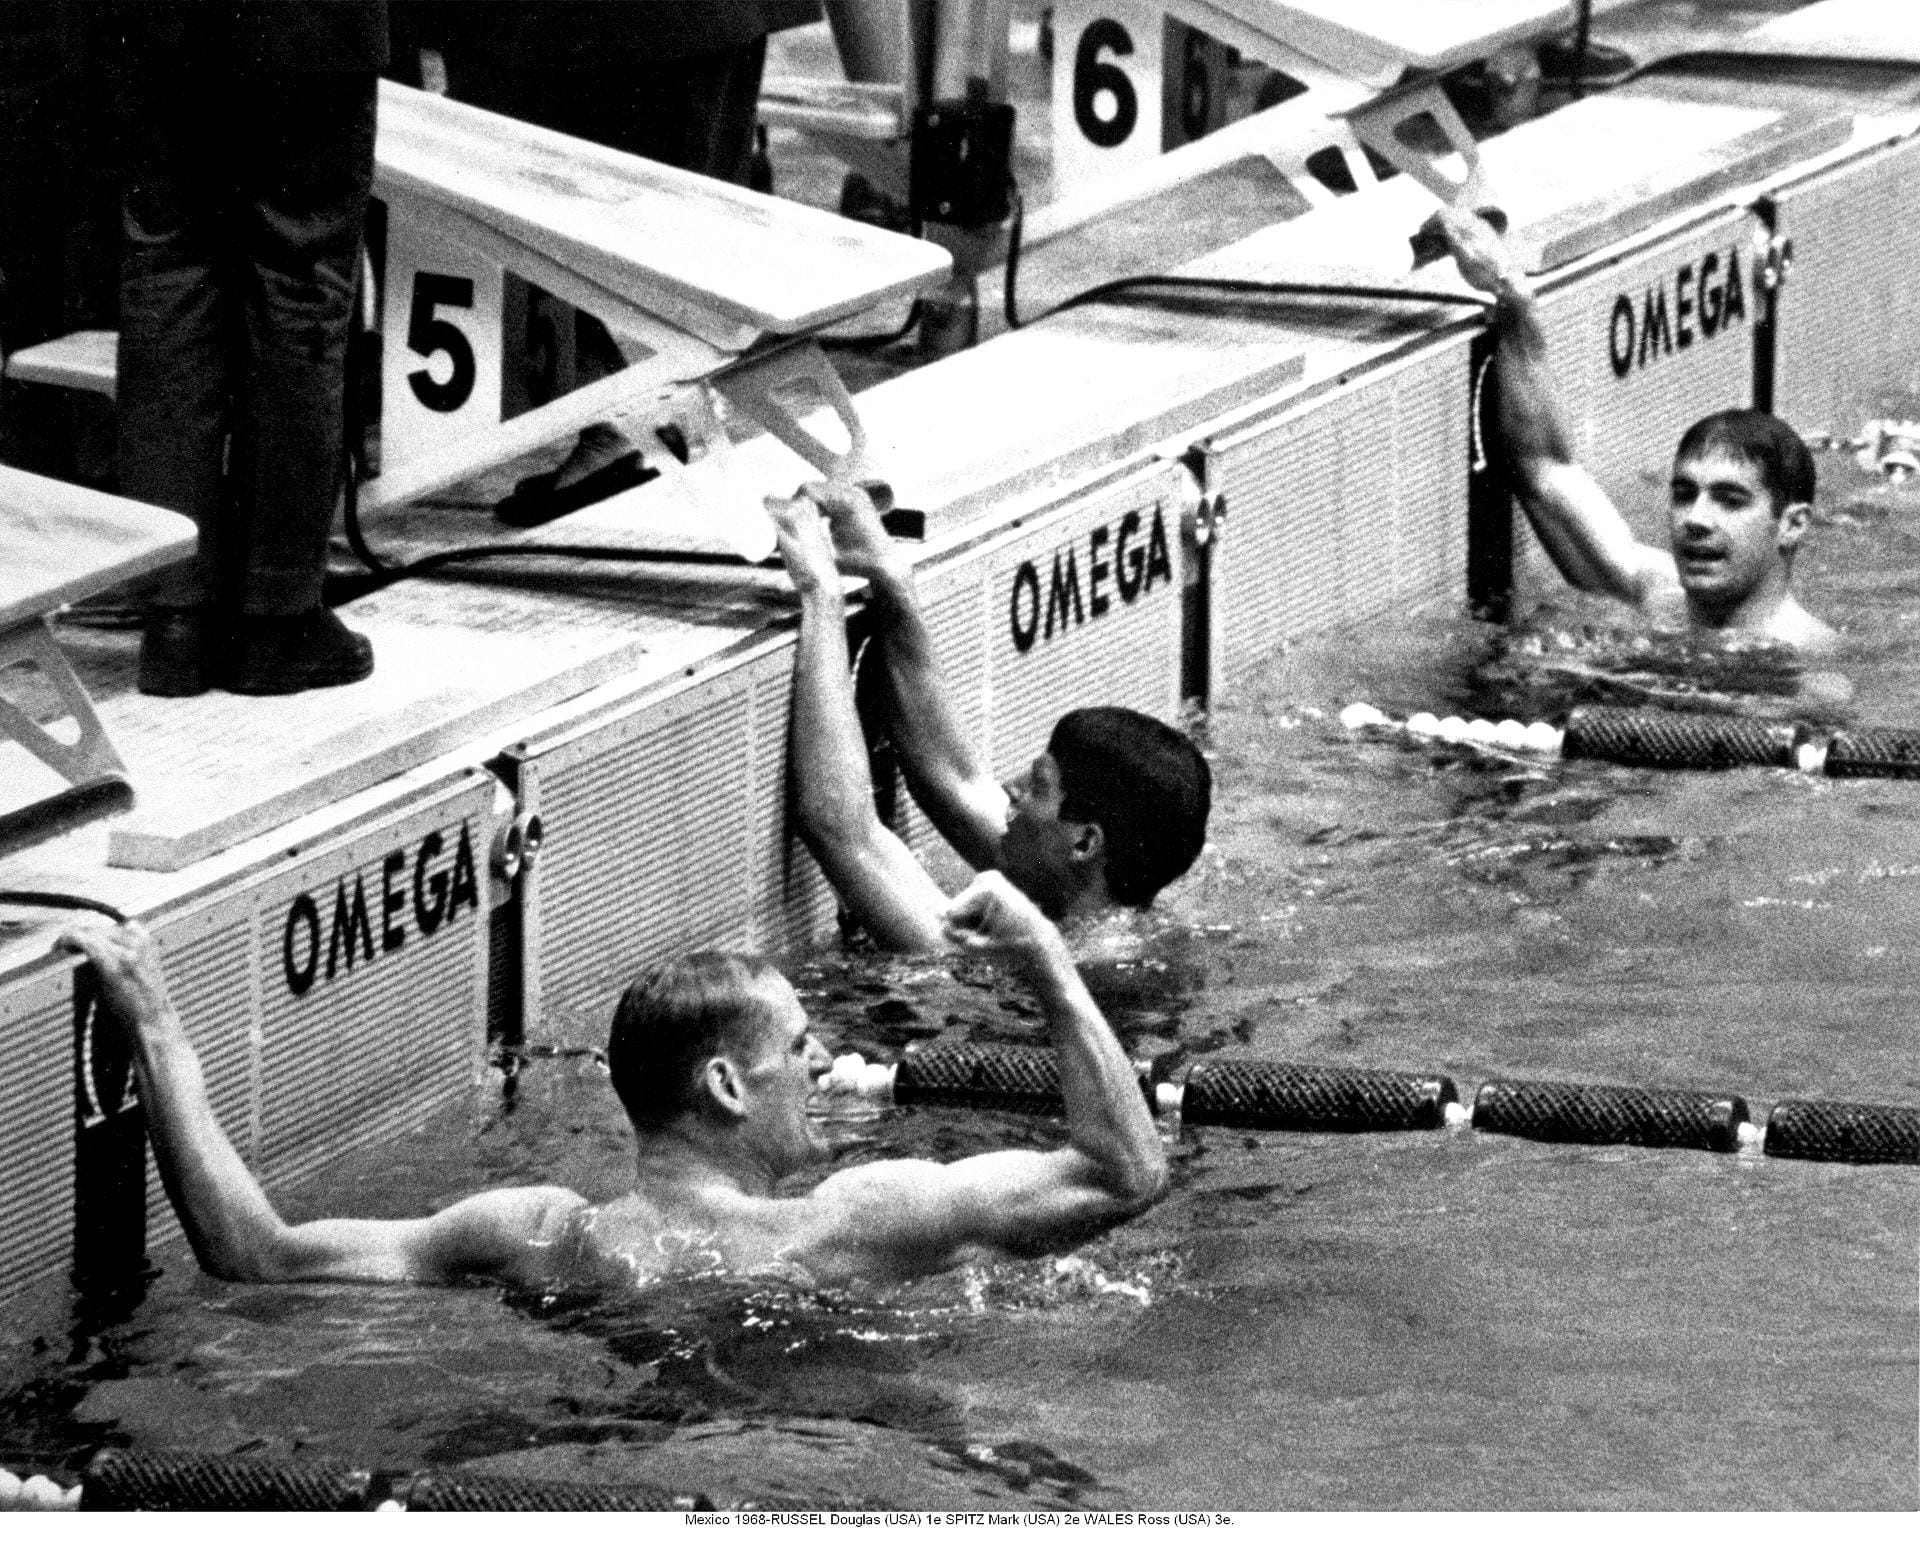 Ein Highlight in der Zeitmessung bei Olympia waren die Touchpads mit denen Schwimmer im Ziel die Zeitmessung auslösten. 1968 erfolgte der erste Einsatz bei Olympia.